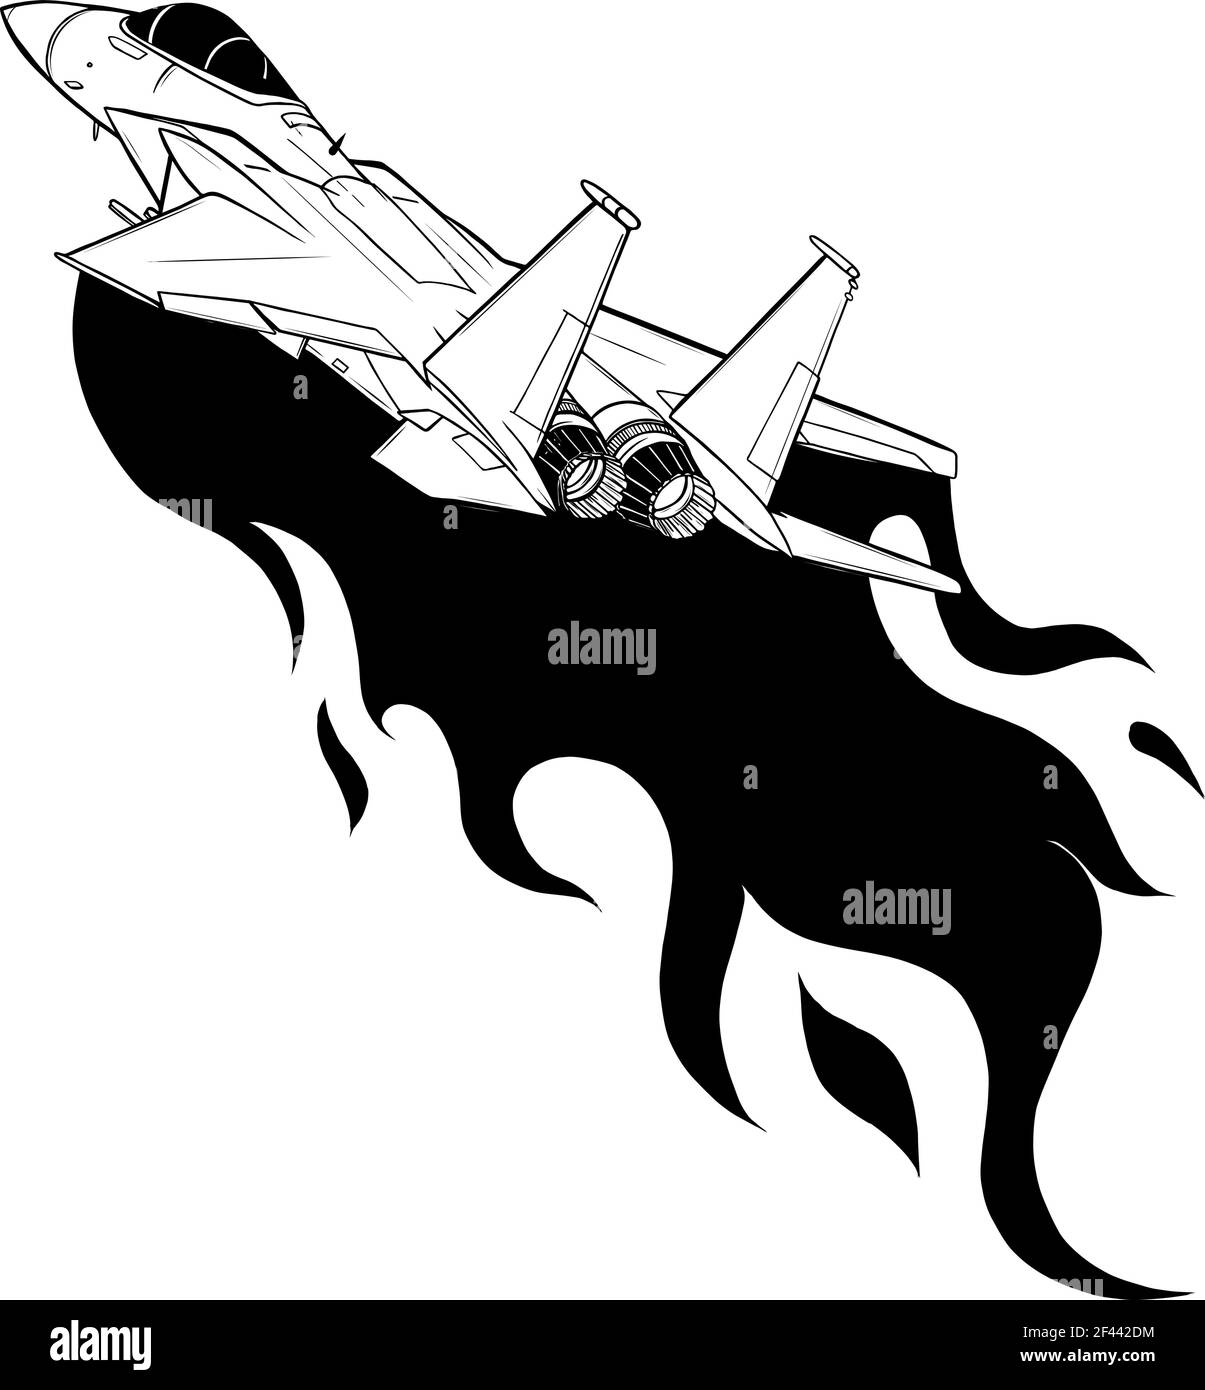 Pesca in bianco e nero di aerei militari isolati sullo sfondo. Illustrazione vettoriale Illustrazione Vettoriale